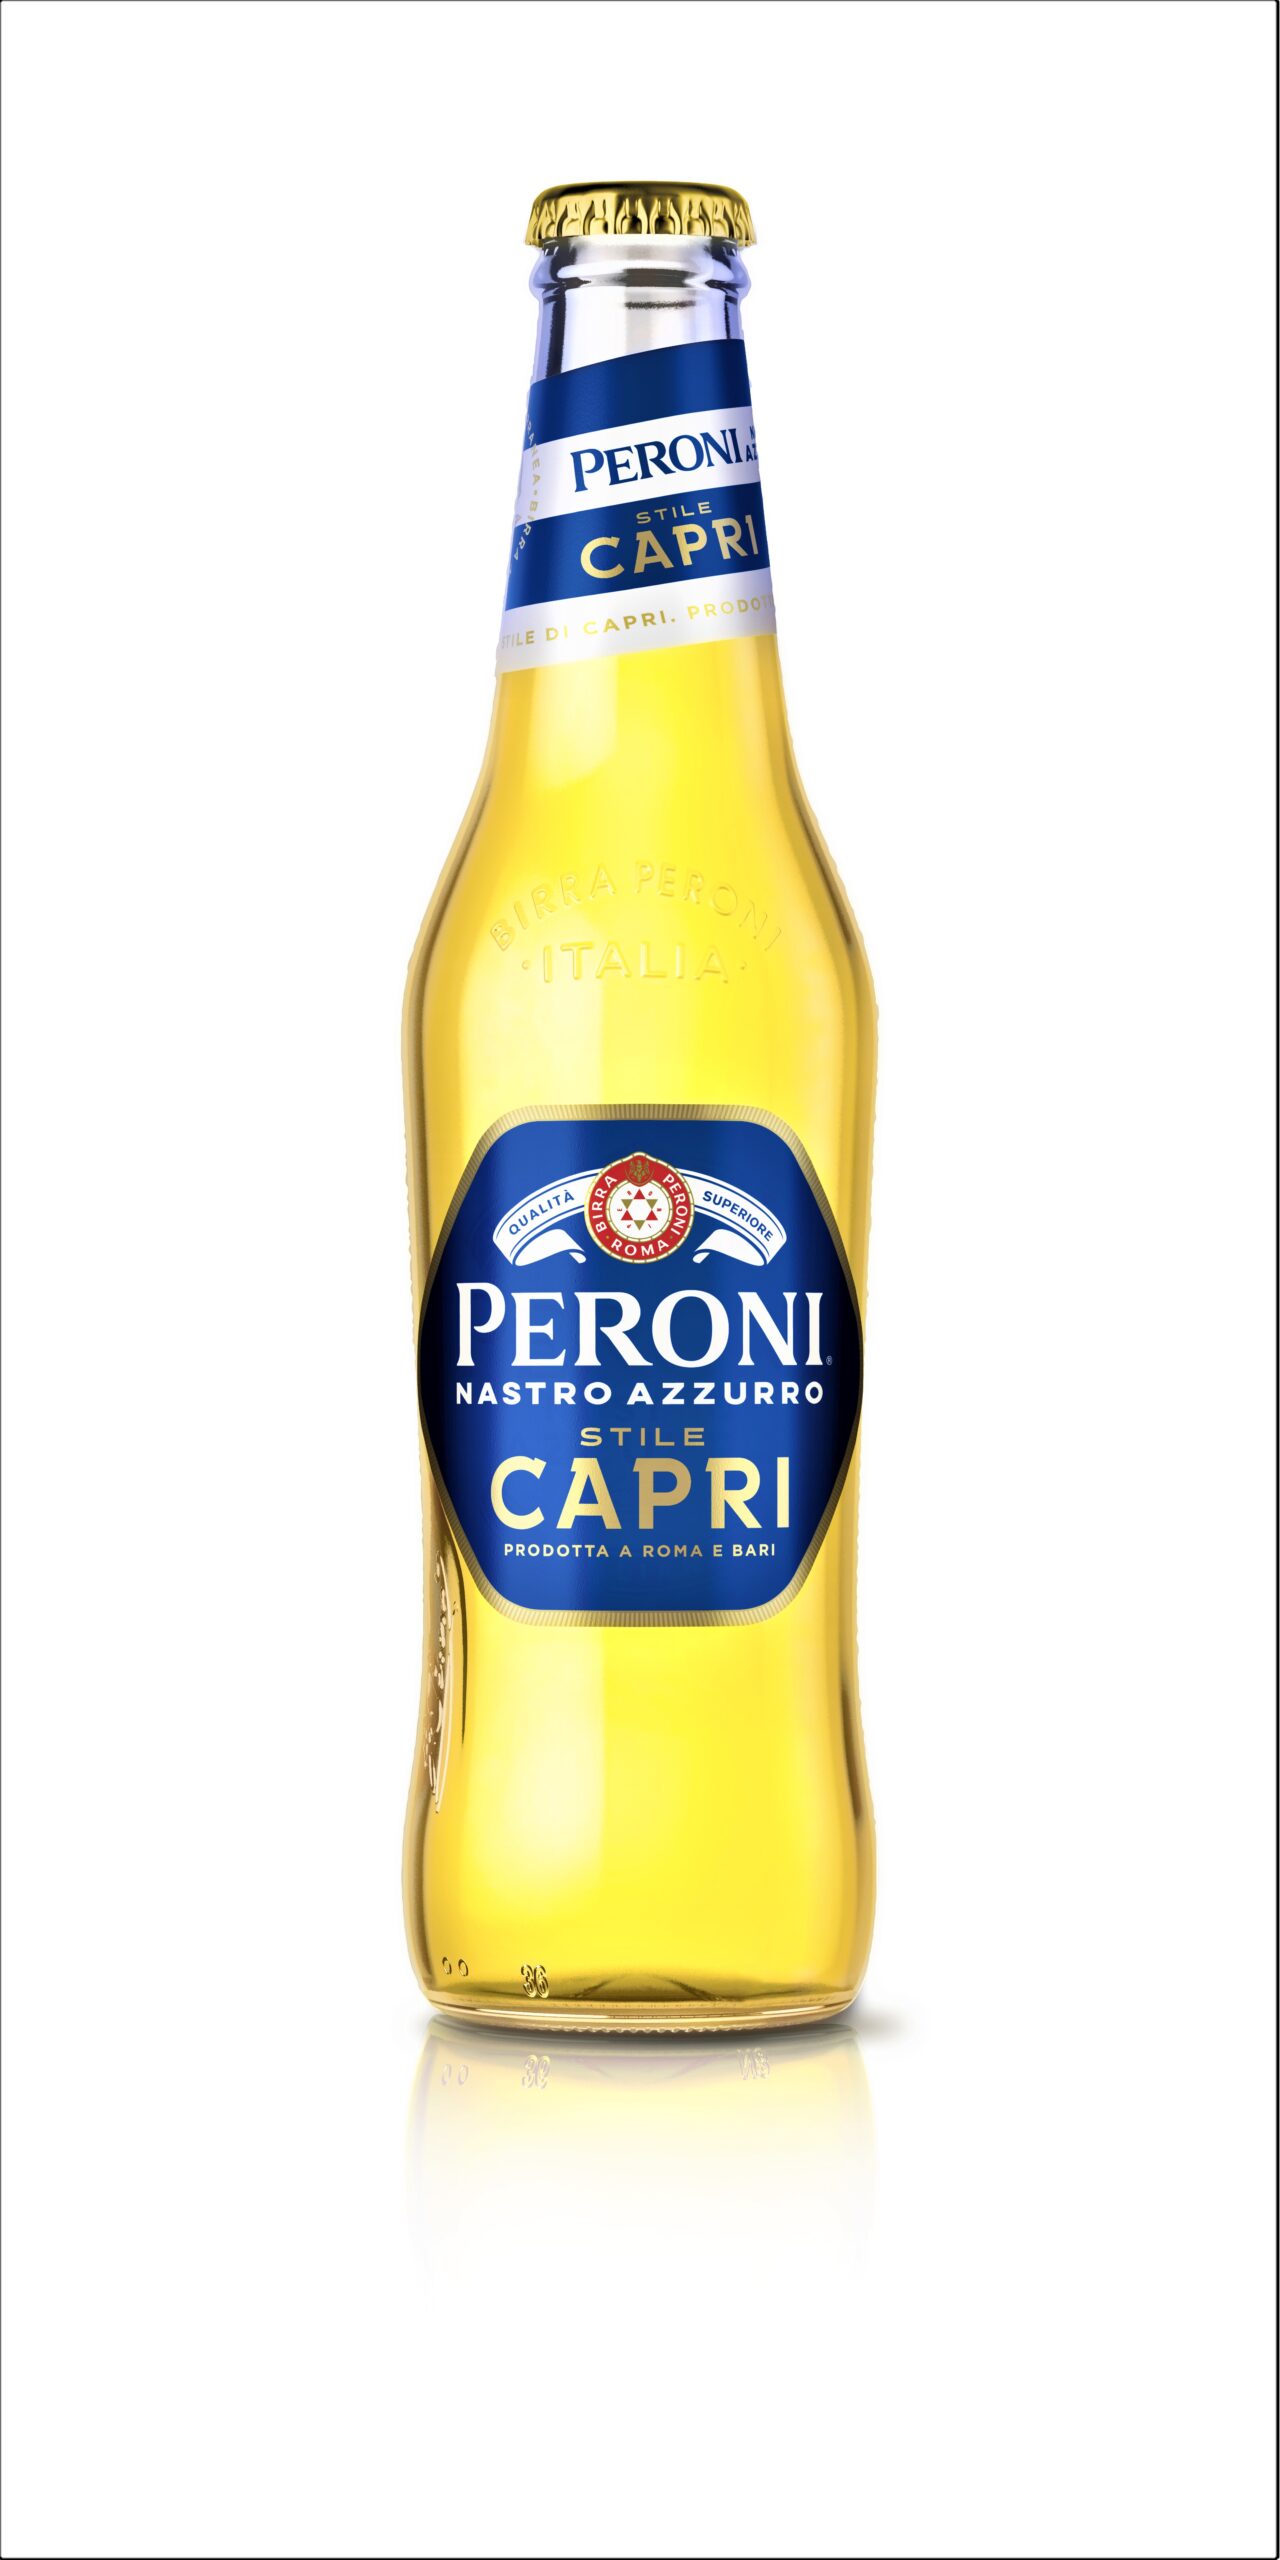 Stile Capri, la nuova birra Peroni Nastro Azzurro per l’estate